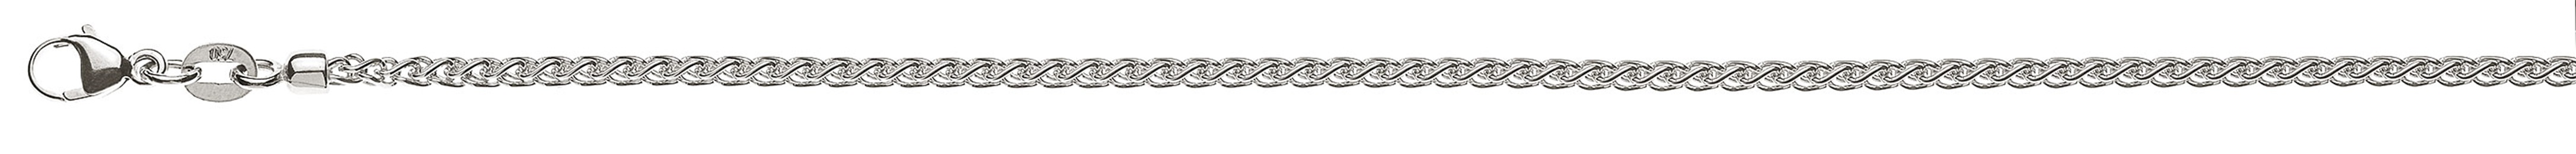 AURONOS Prestige Halskette Weissgold 18K Zopfkette 55cm 2.15mm